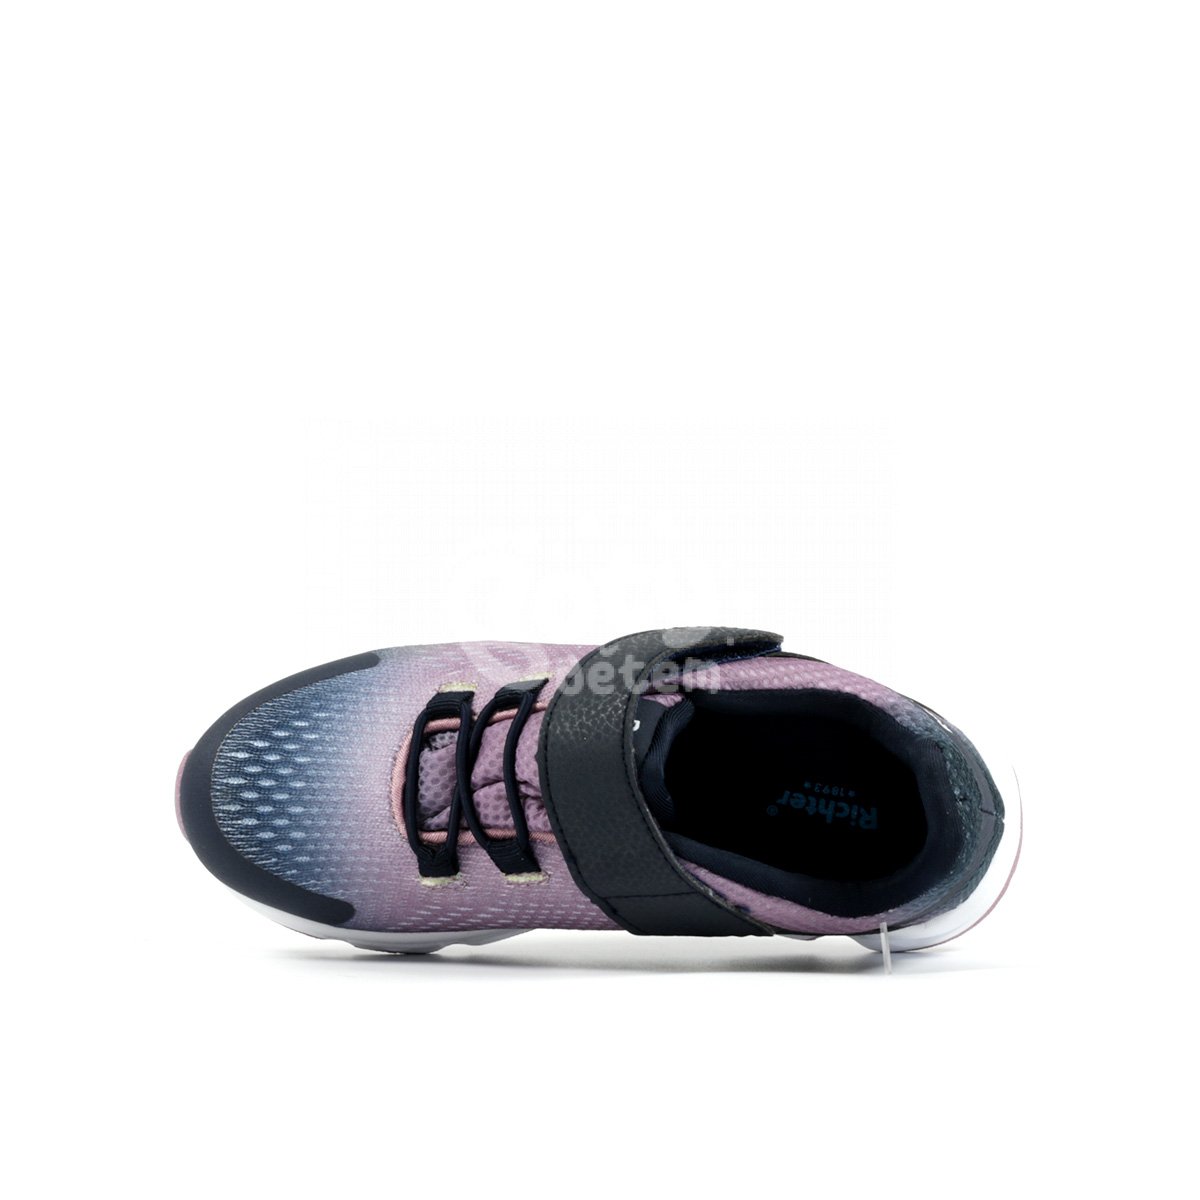 Sportovní obuv Richter 8001-2193-7200 fialová